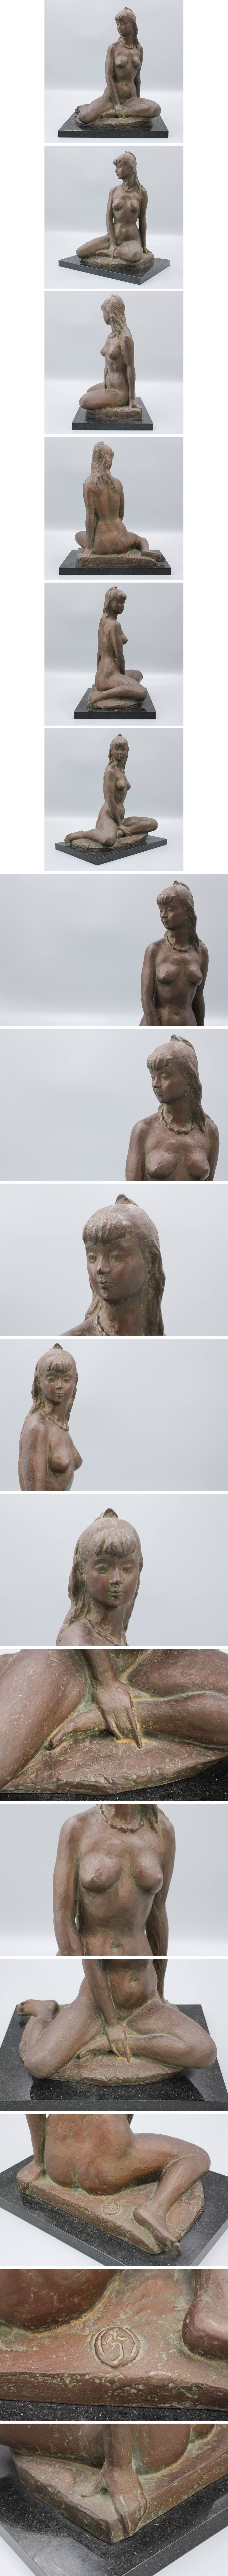 限定SALE格安文化功労者 矢野秀徳作「美人裸婦像」ブロンズ 約40cm　約11kg 大理石台座付 日展彫刻家 5D06.50E 西洋彫刻